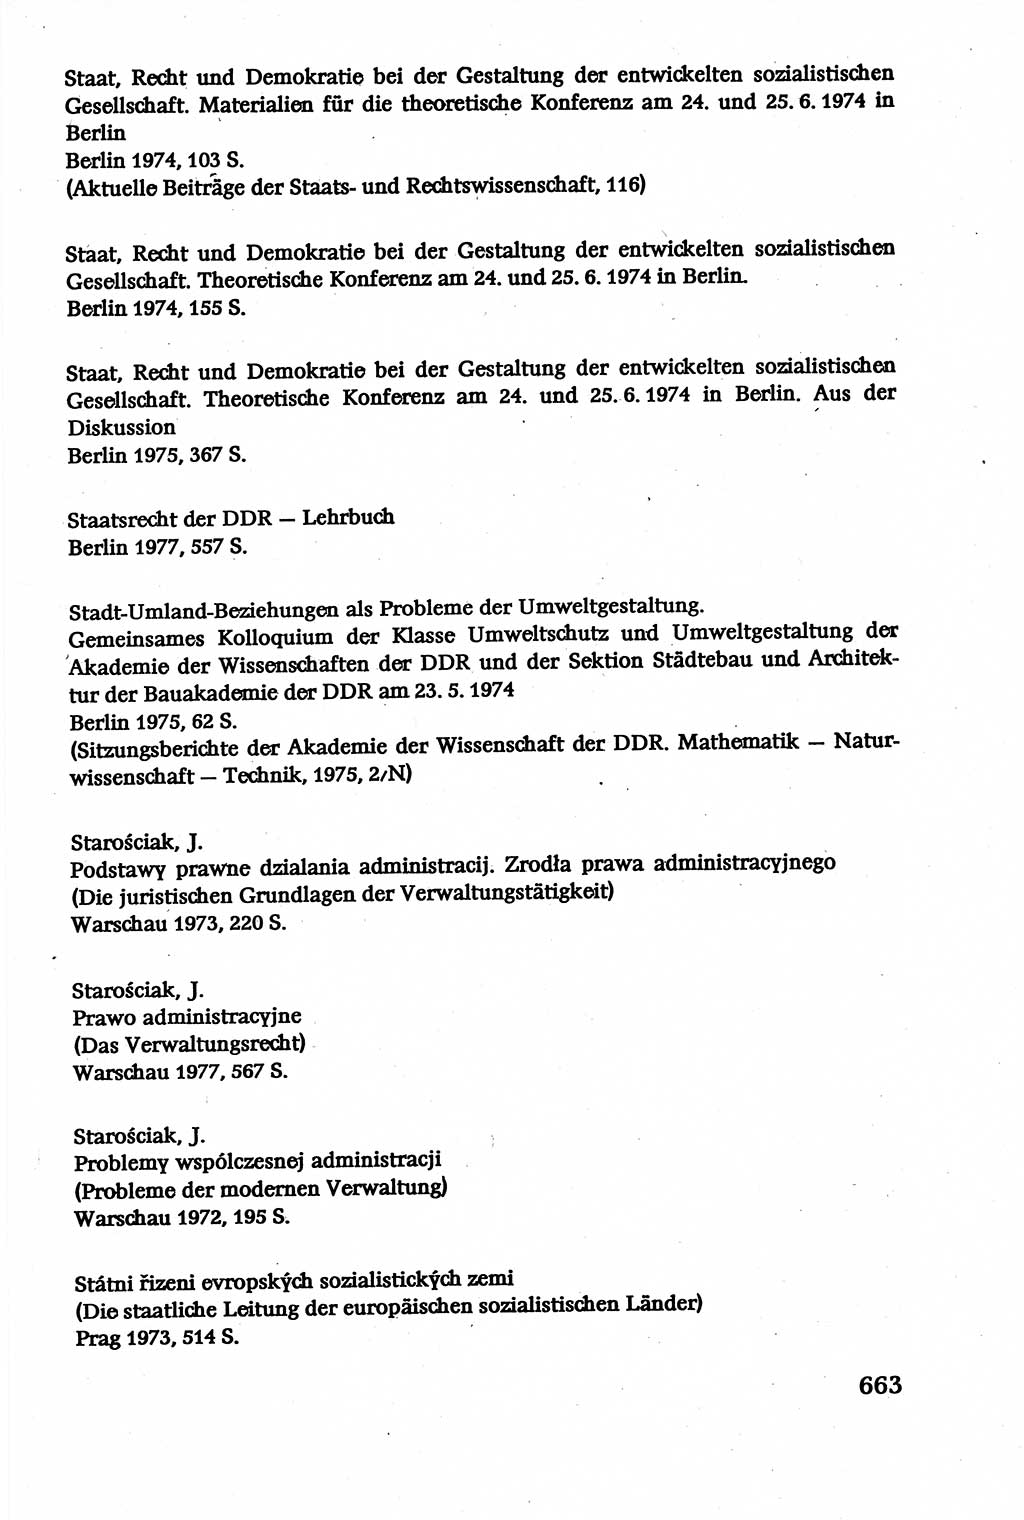 Verwaltungsrecht [Deutsche Demokratische Republik (DDR)], Lehrbuch 1979, Seite 663 (Verw.-R. DDR Lb. 1979, S. 663)